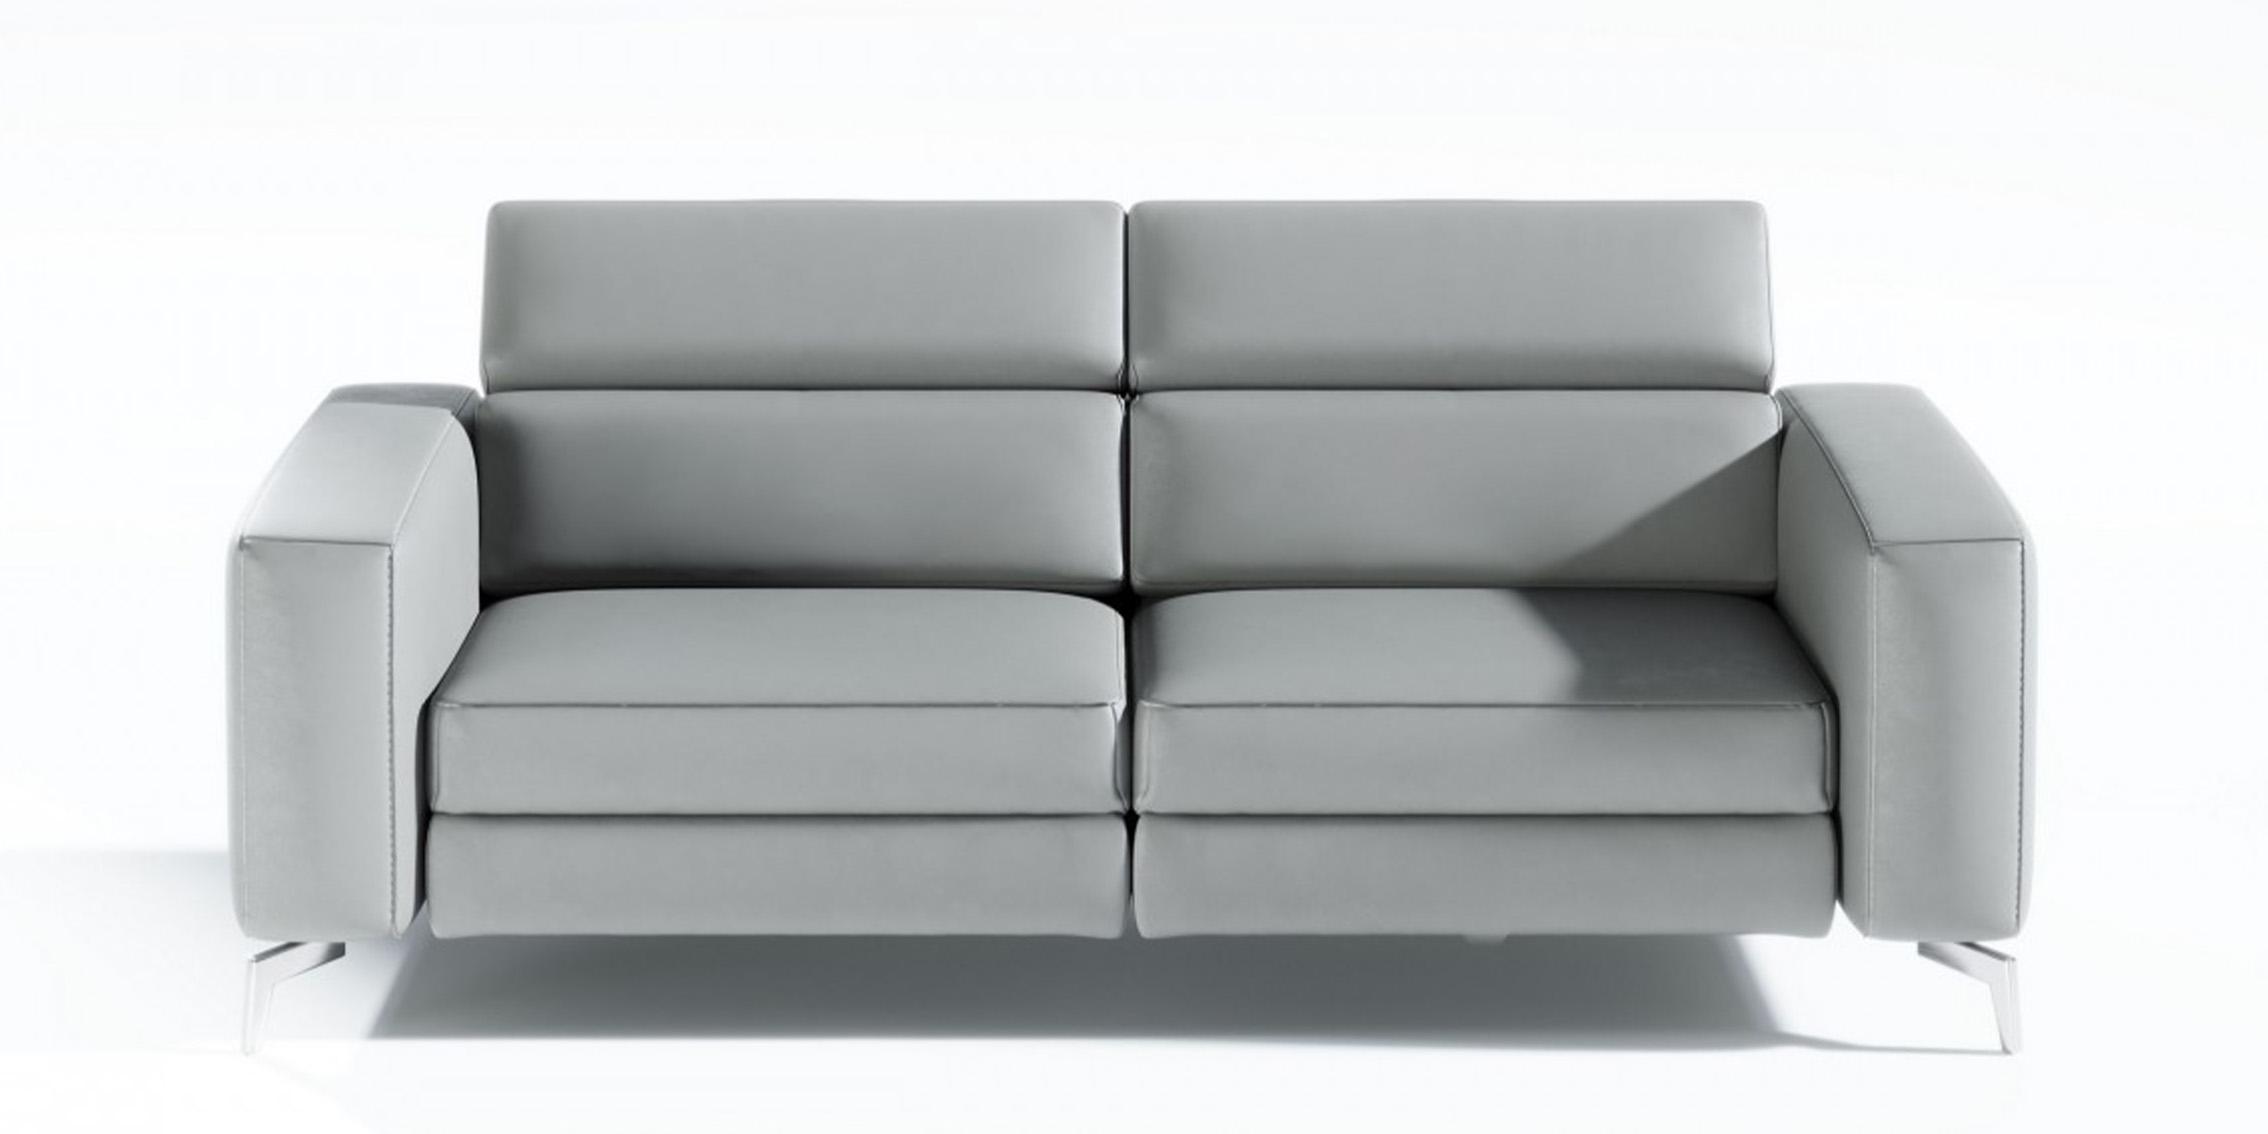 Contemporary, Modern Recliner Sofa VGCCROMA-SF-CER-GRY-S VGCCROMA-SF-CER-GRY-S in Gray Italian Leather